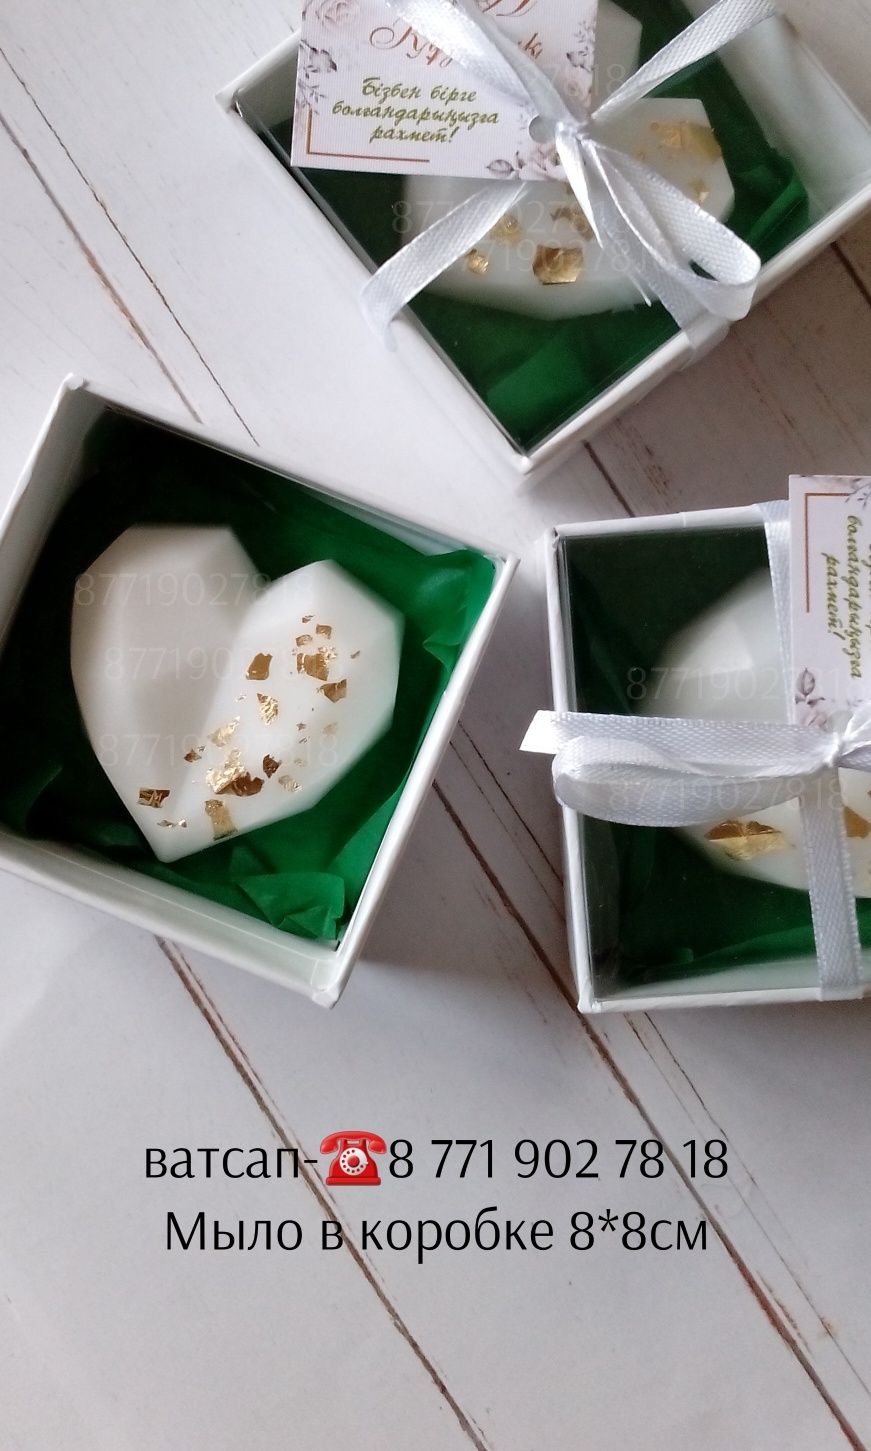 Тойбастар Астана бонбоньерки подарки подсвечники хит шкатулки мыло